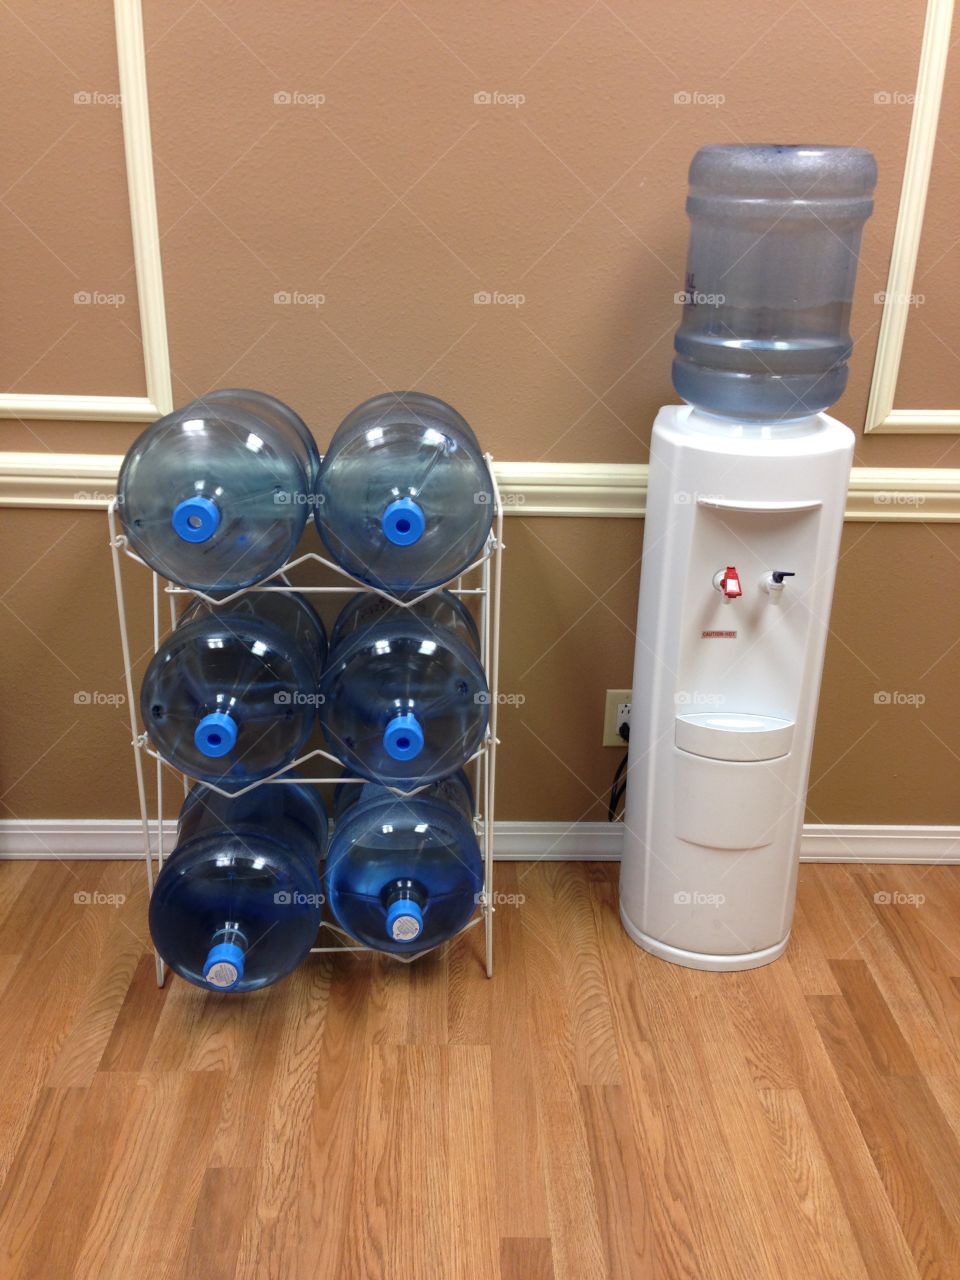 Water dispenser at an office.